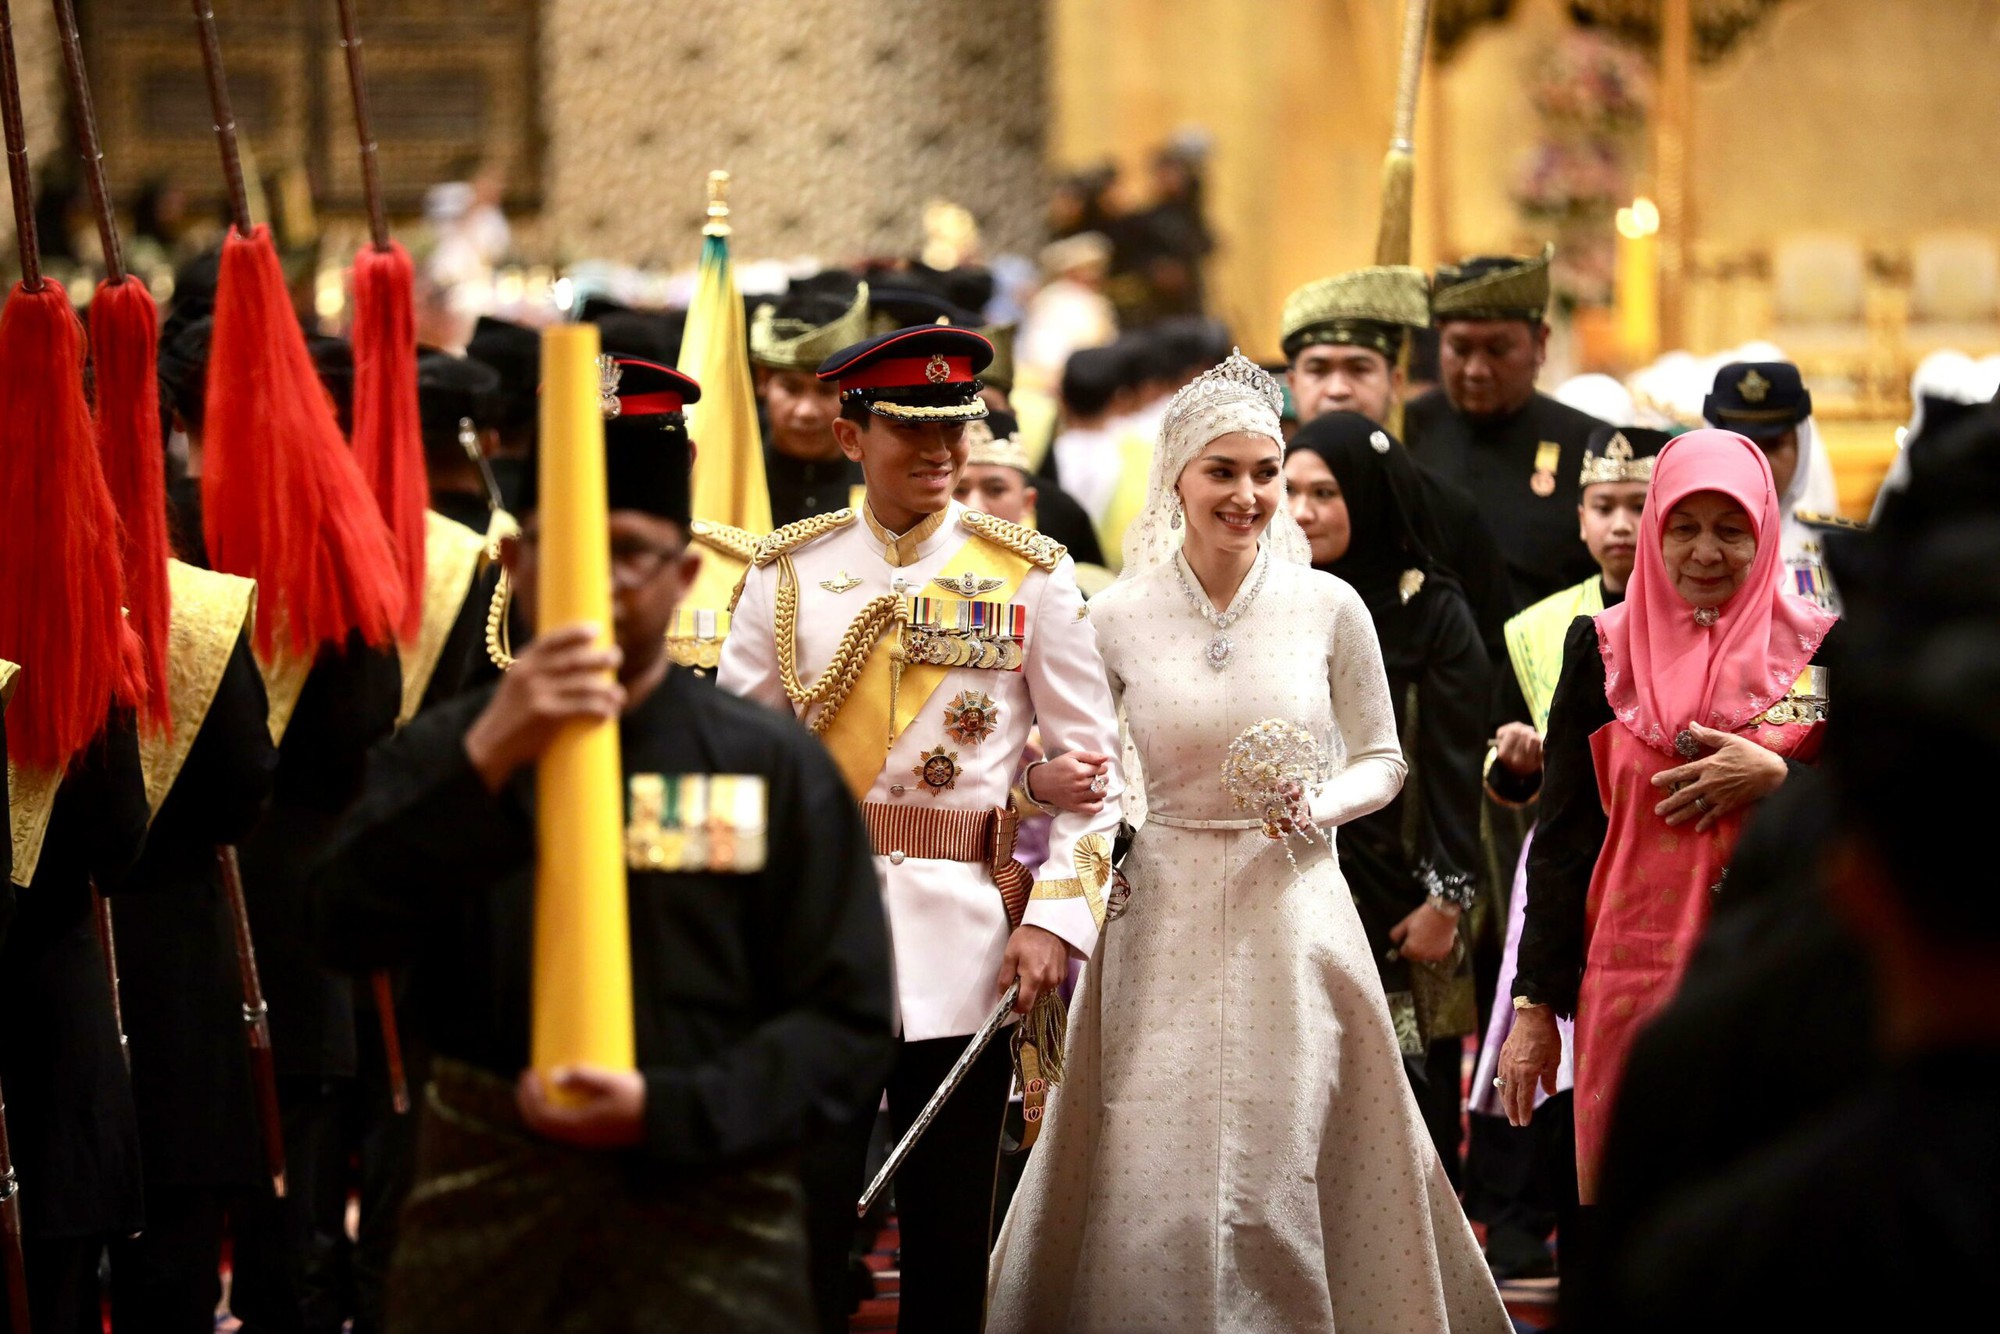 Đám cưới Hoàng tử Brunei: Cặp đôi đẹp như bước ra từ cổ tích, lễ đường xa hoa lộng lẫy đến từng chi tiết